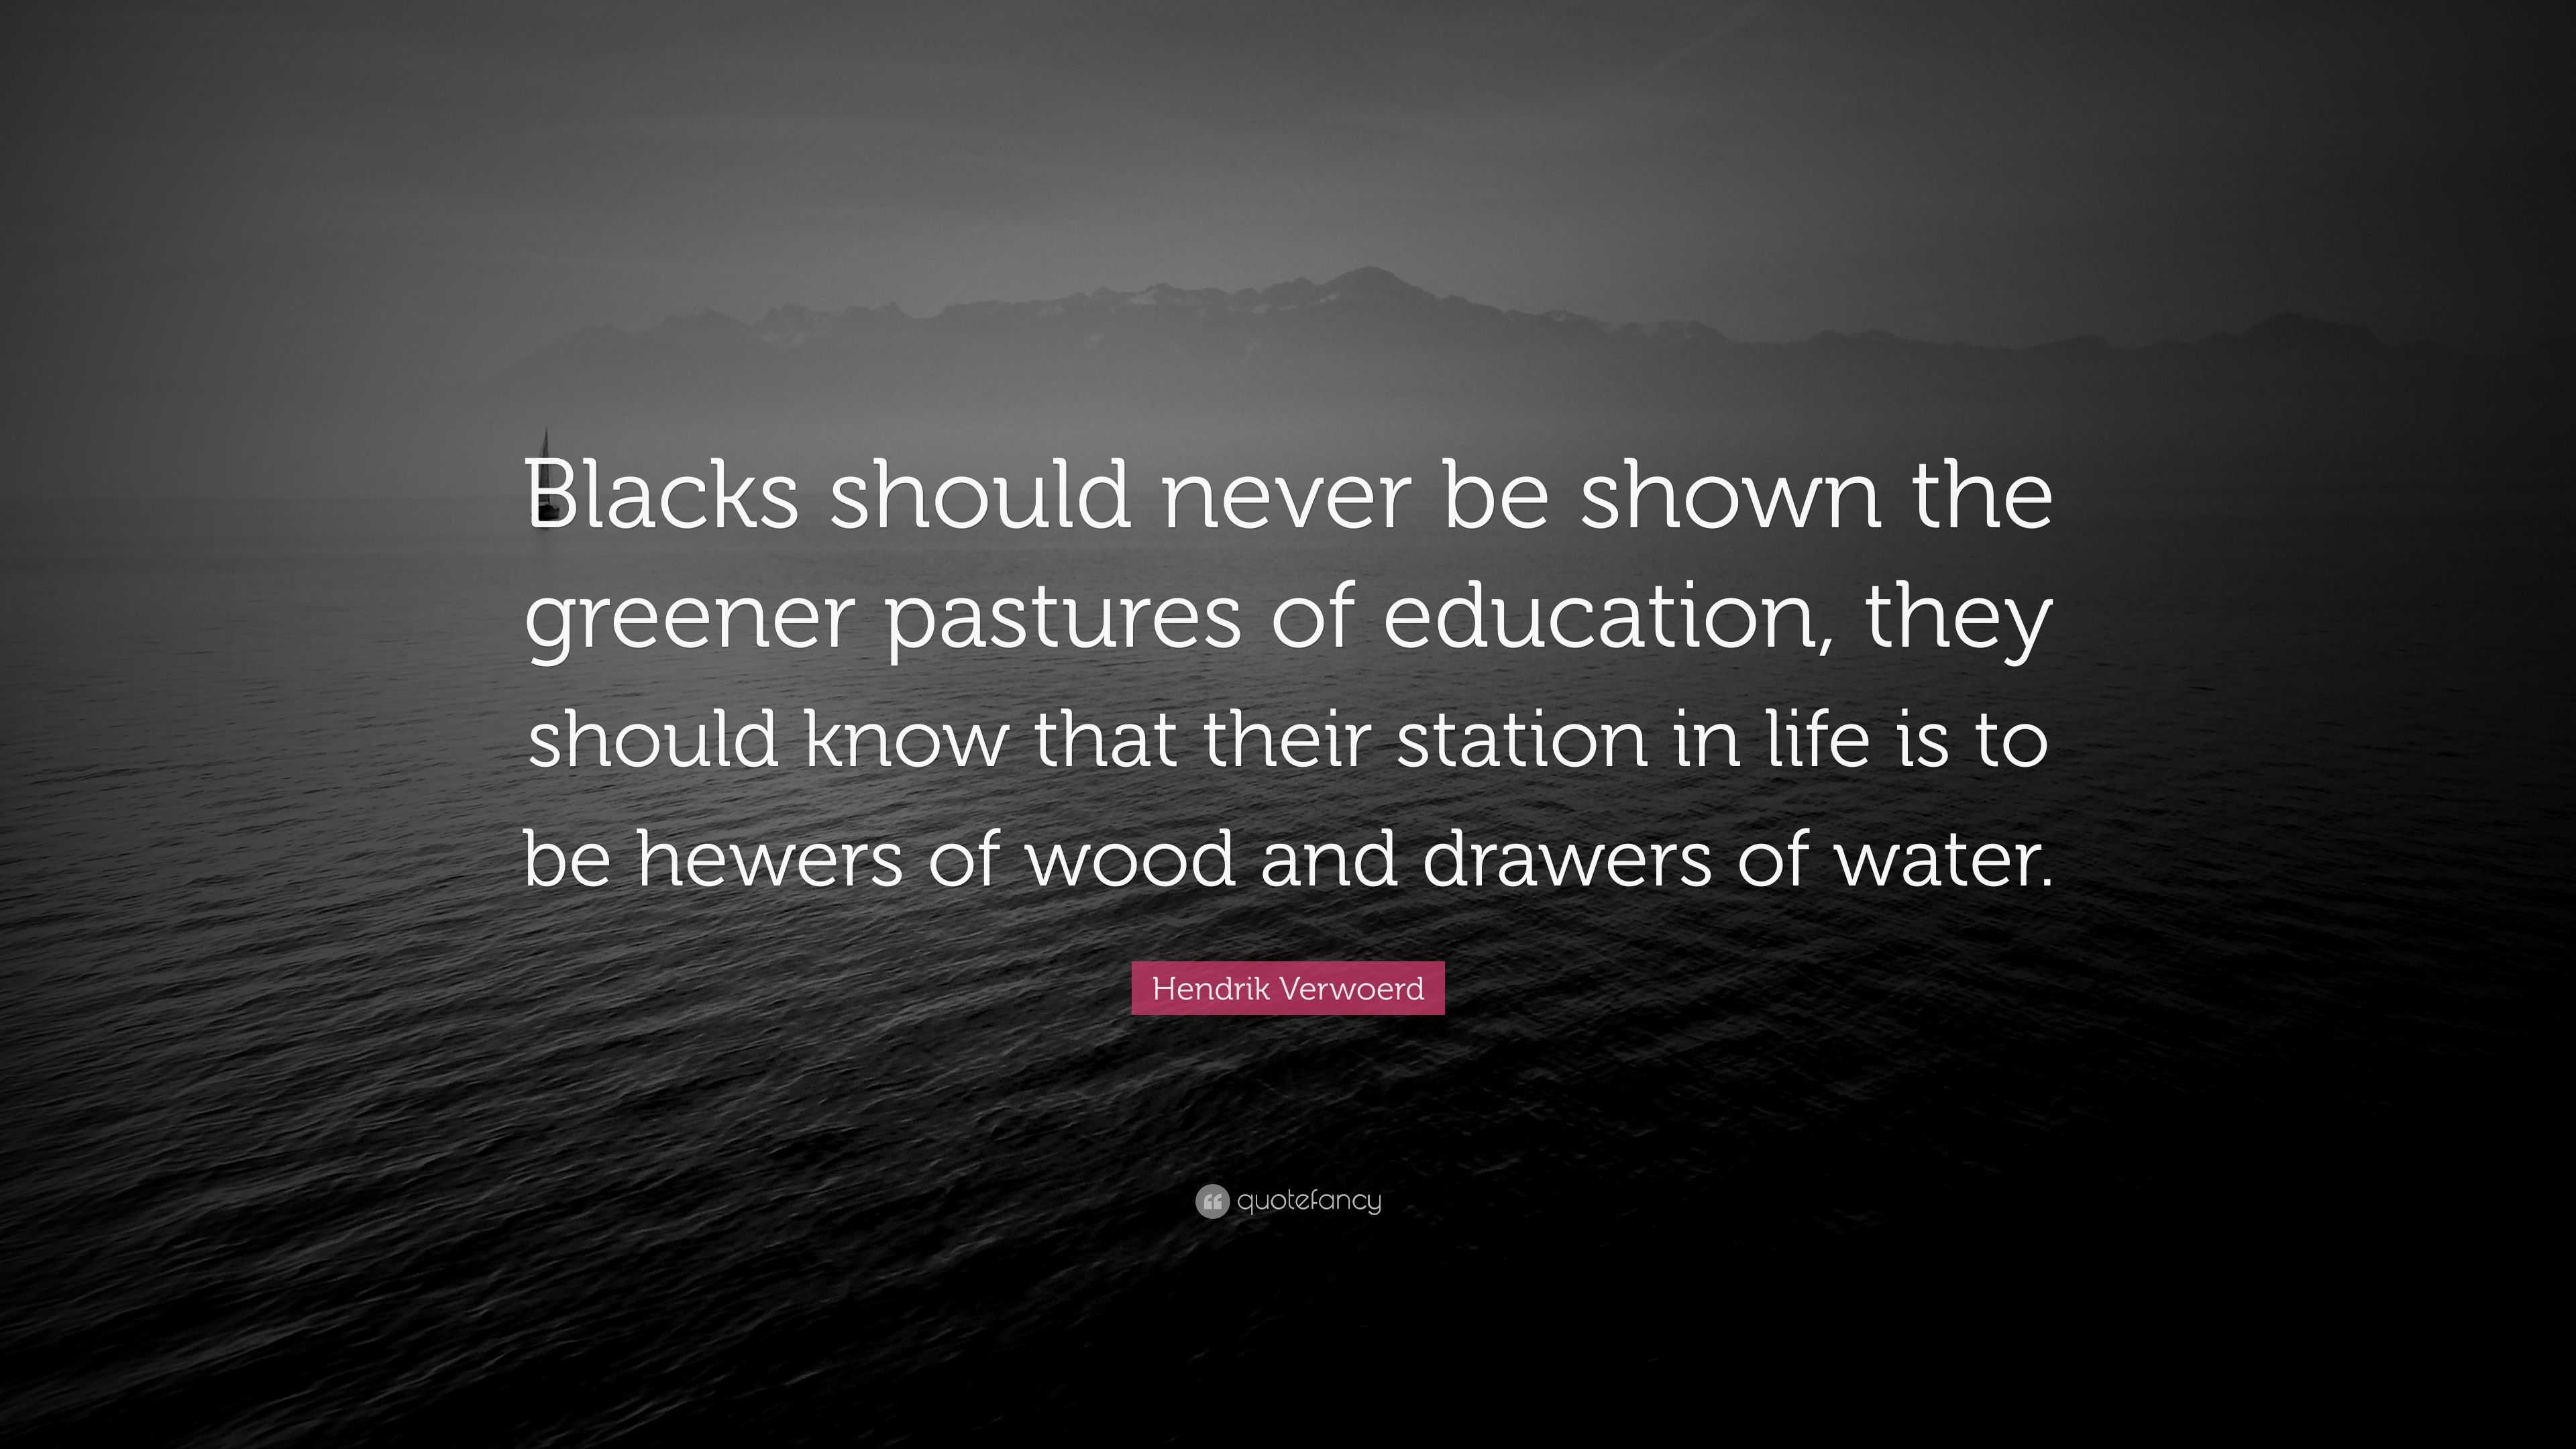 Hendrik Verwoerd Quote: “Blacks should never be shown the greener